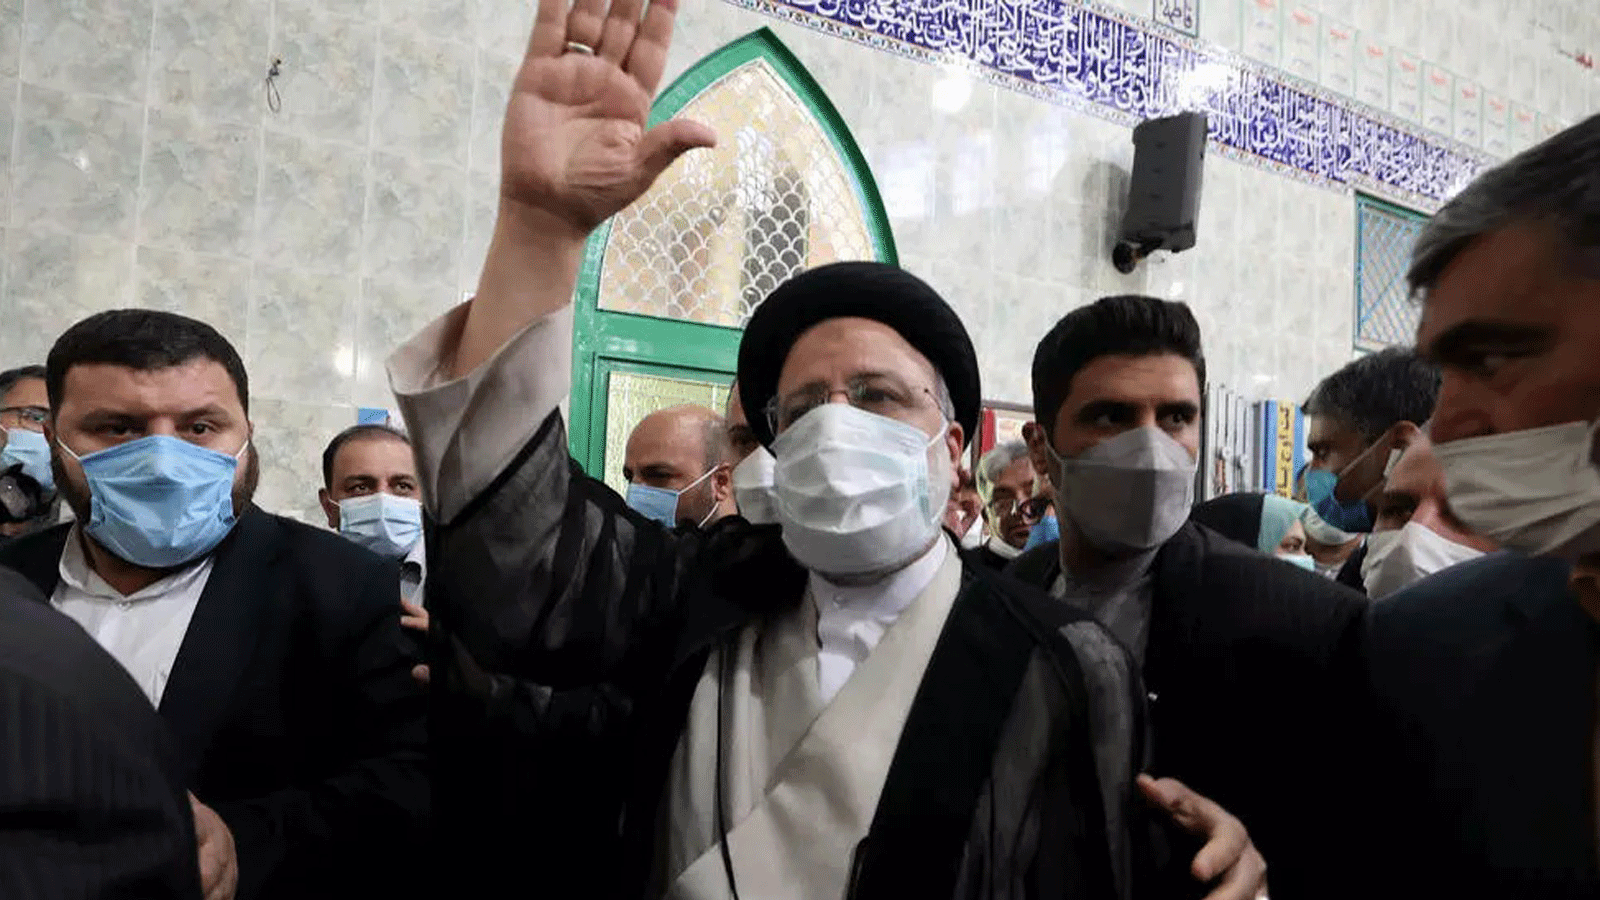 ابراهيم رئيسي بعد إدلائه بصوته في الانتخابات الرئاسية الإيرانية في 18 حزيران/يونيو 2021